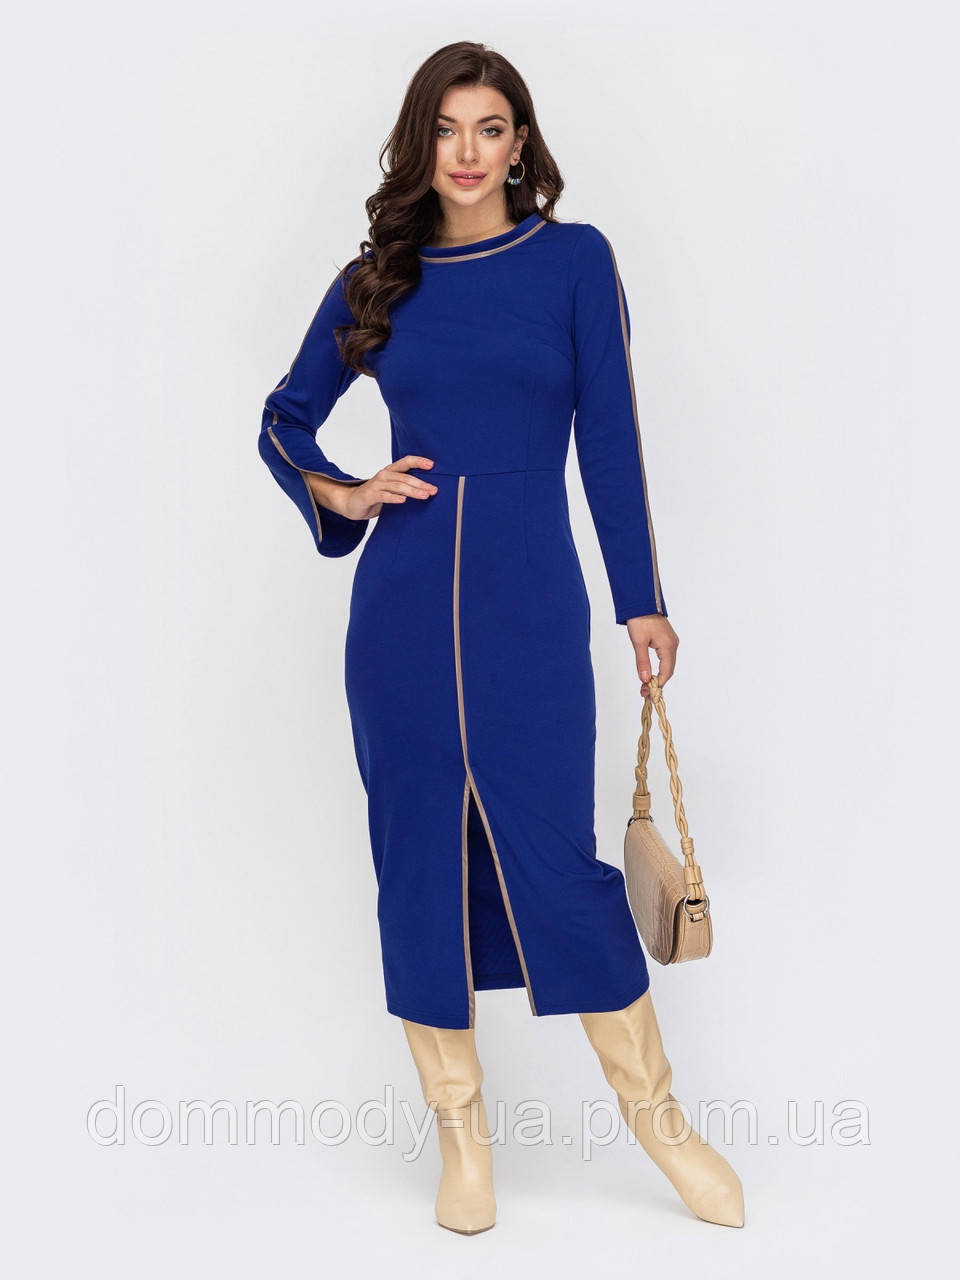 

Платье женское Lady blu style 46